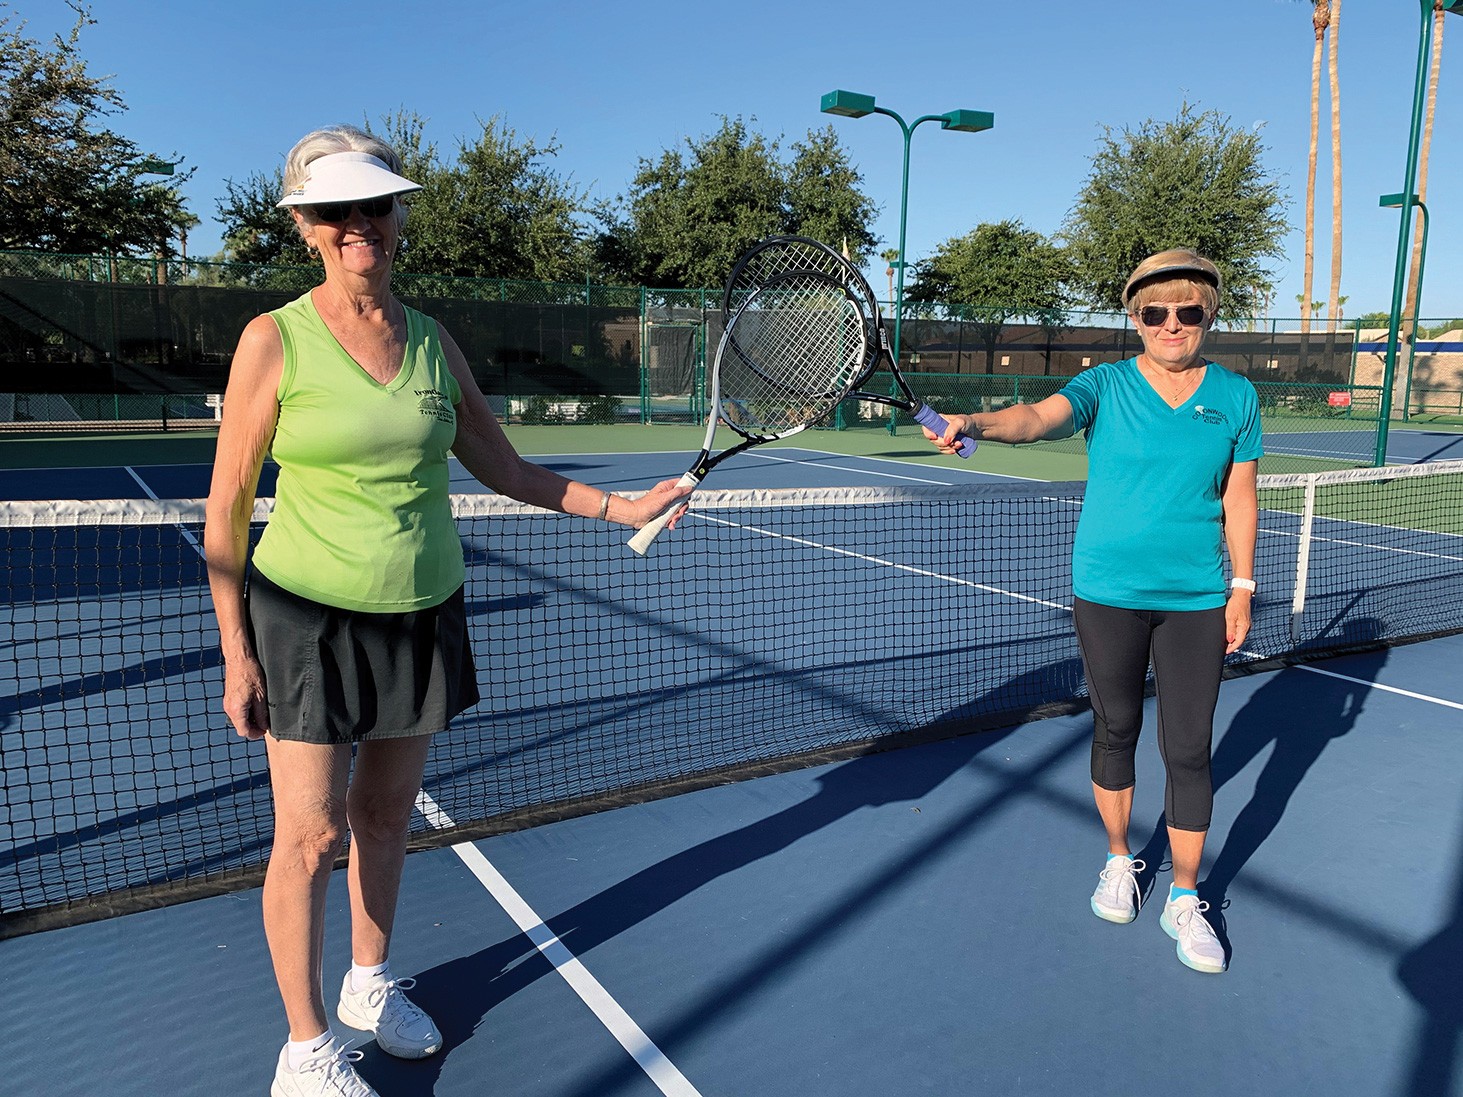 Vivian Guimond and Edith Tanniru warm up for the tennis mixer while social distancing.